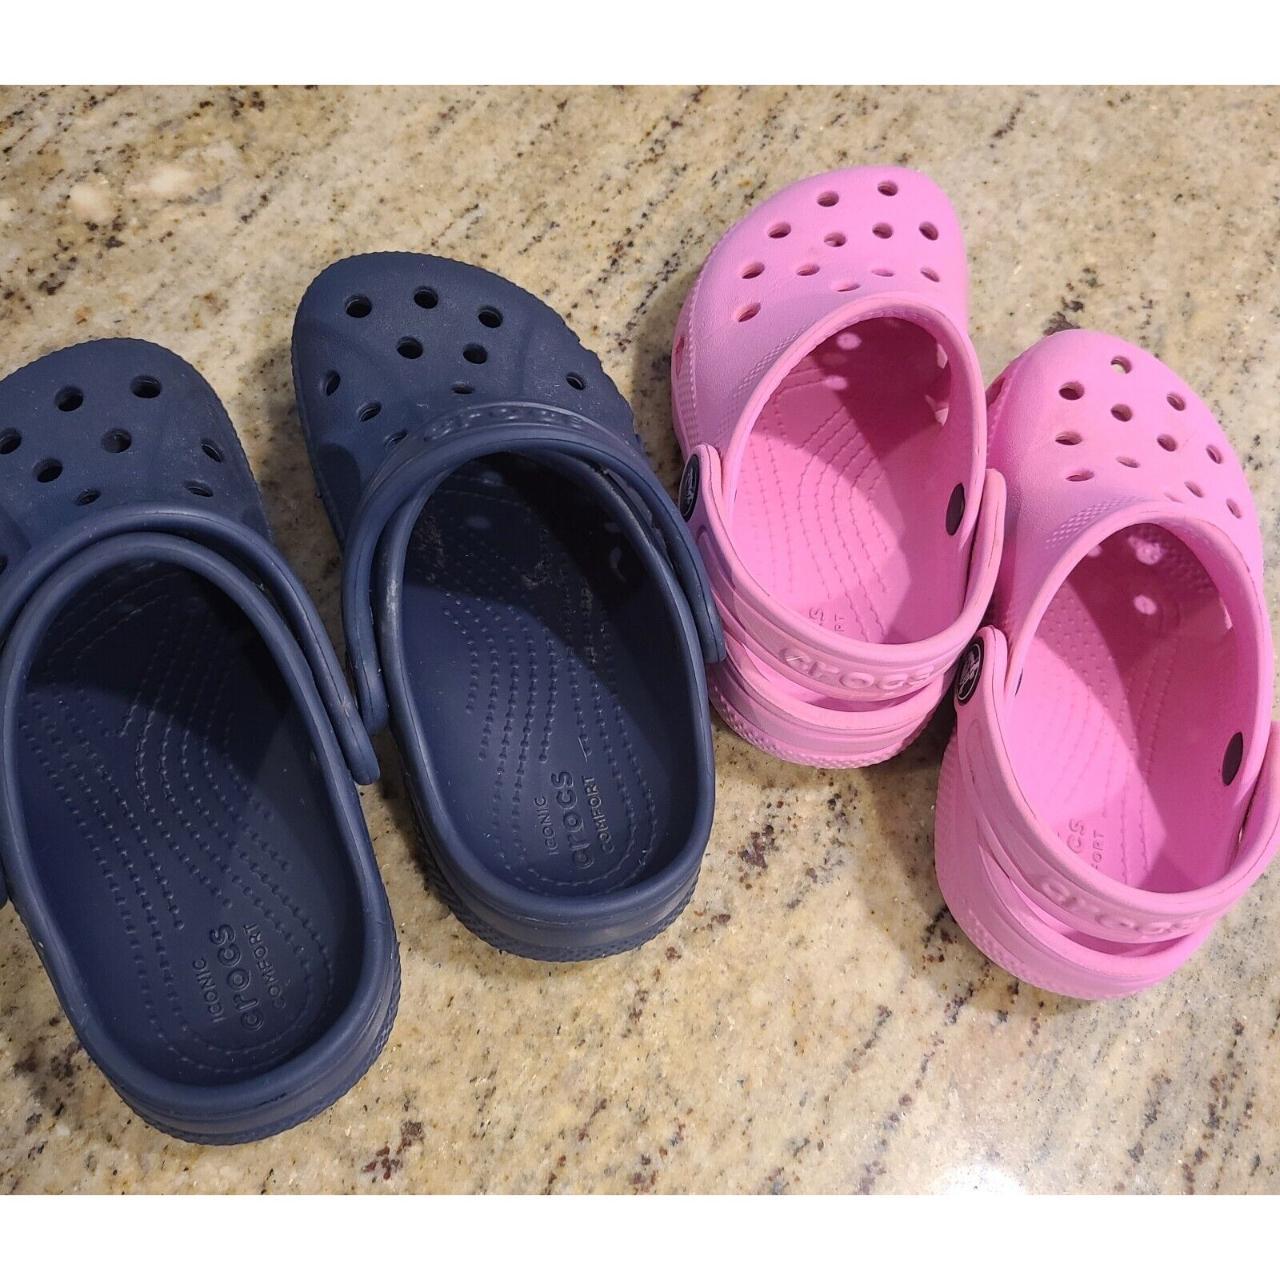 2 Pair CROCS Sandals Pink Child Size 9 & Blue Child... - Depop